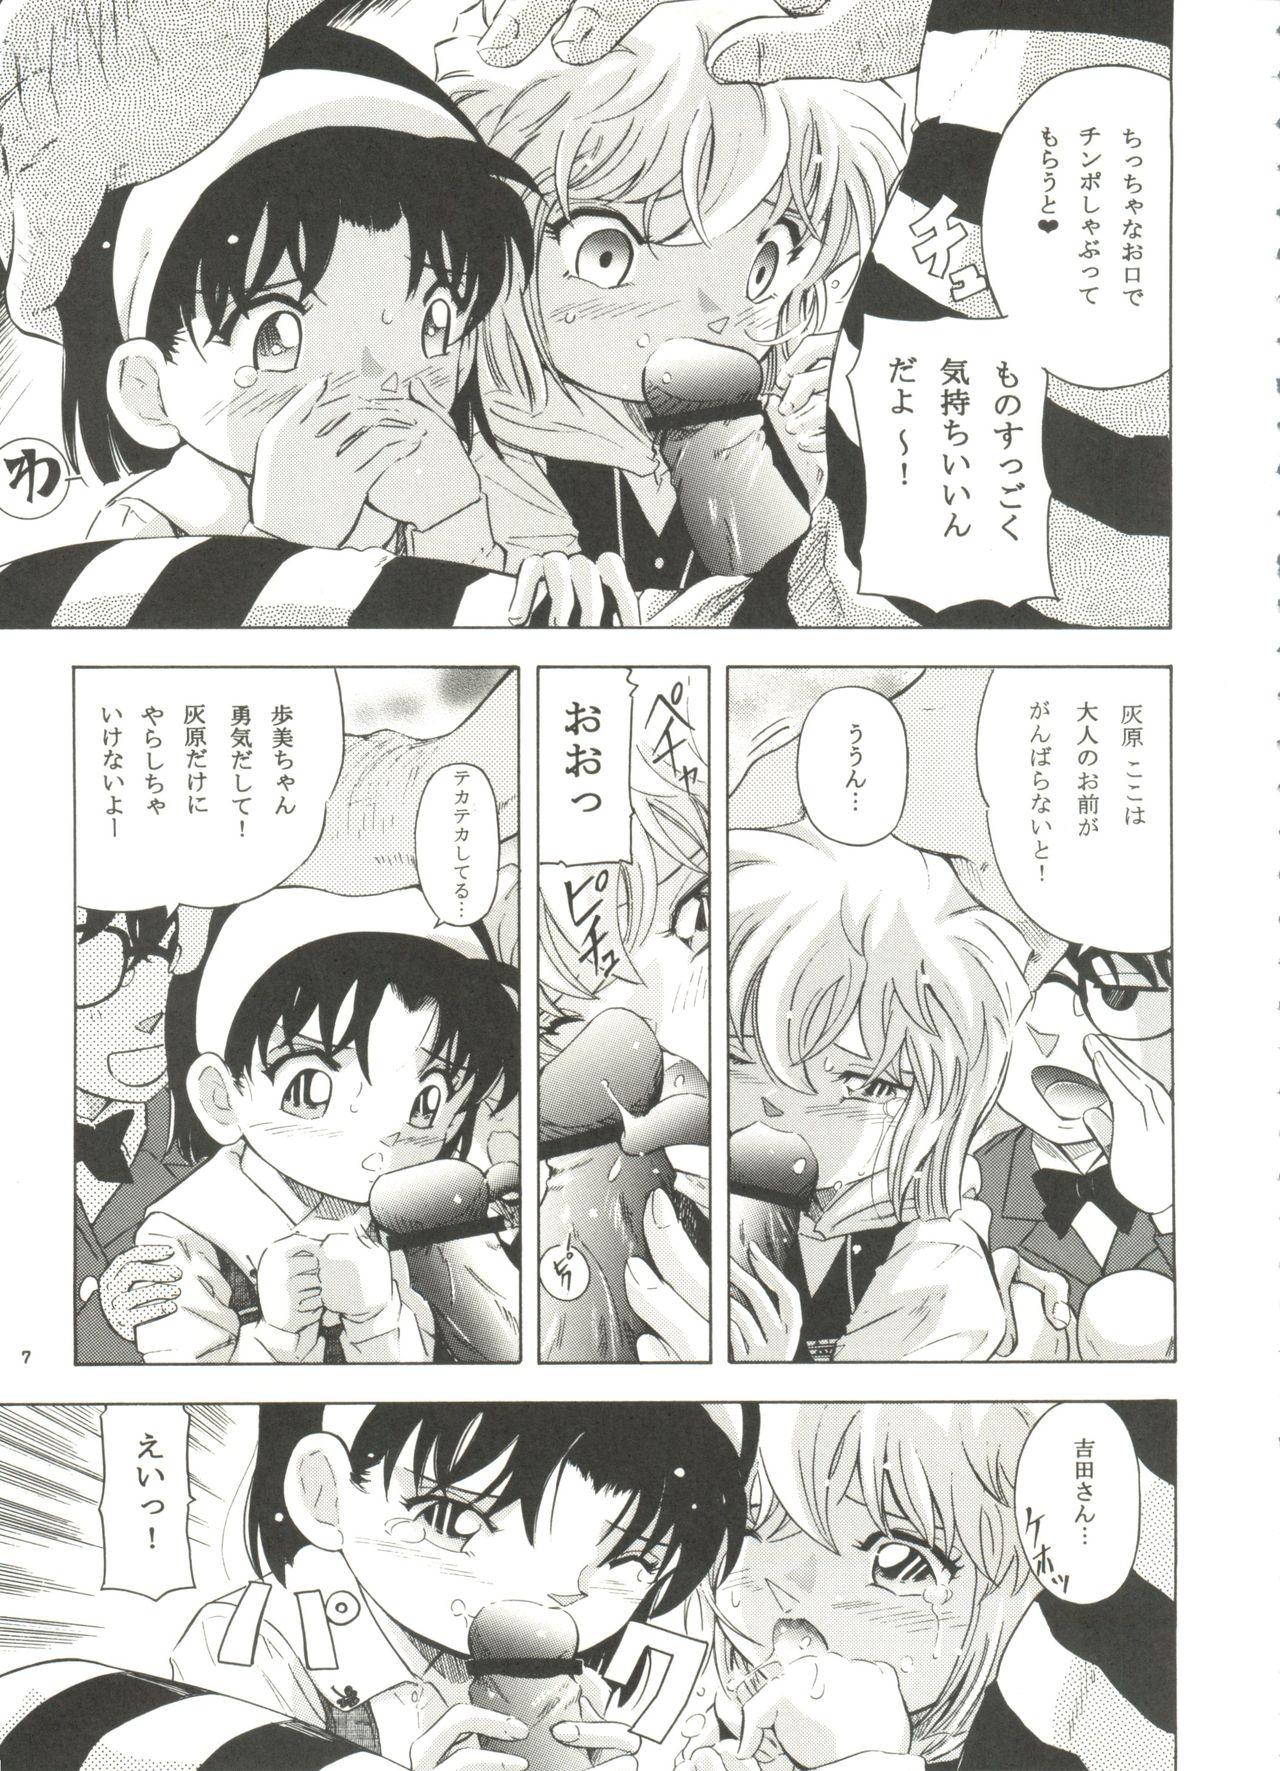 Cash Injuu Vol. 6 Teitanko Jiken - Detective conan Nerd - Page 6